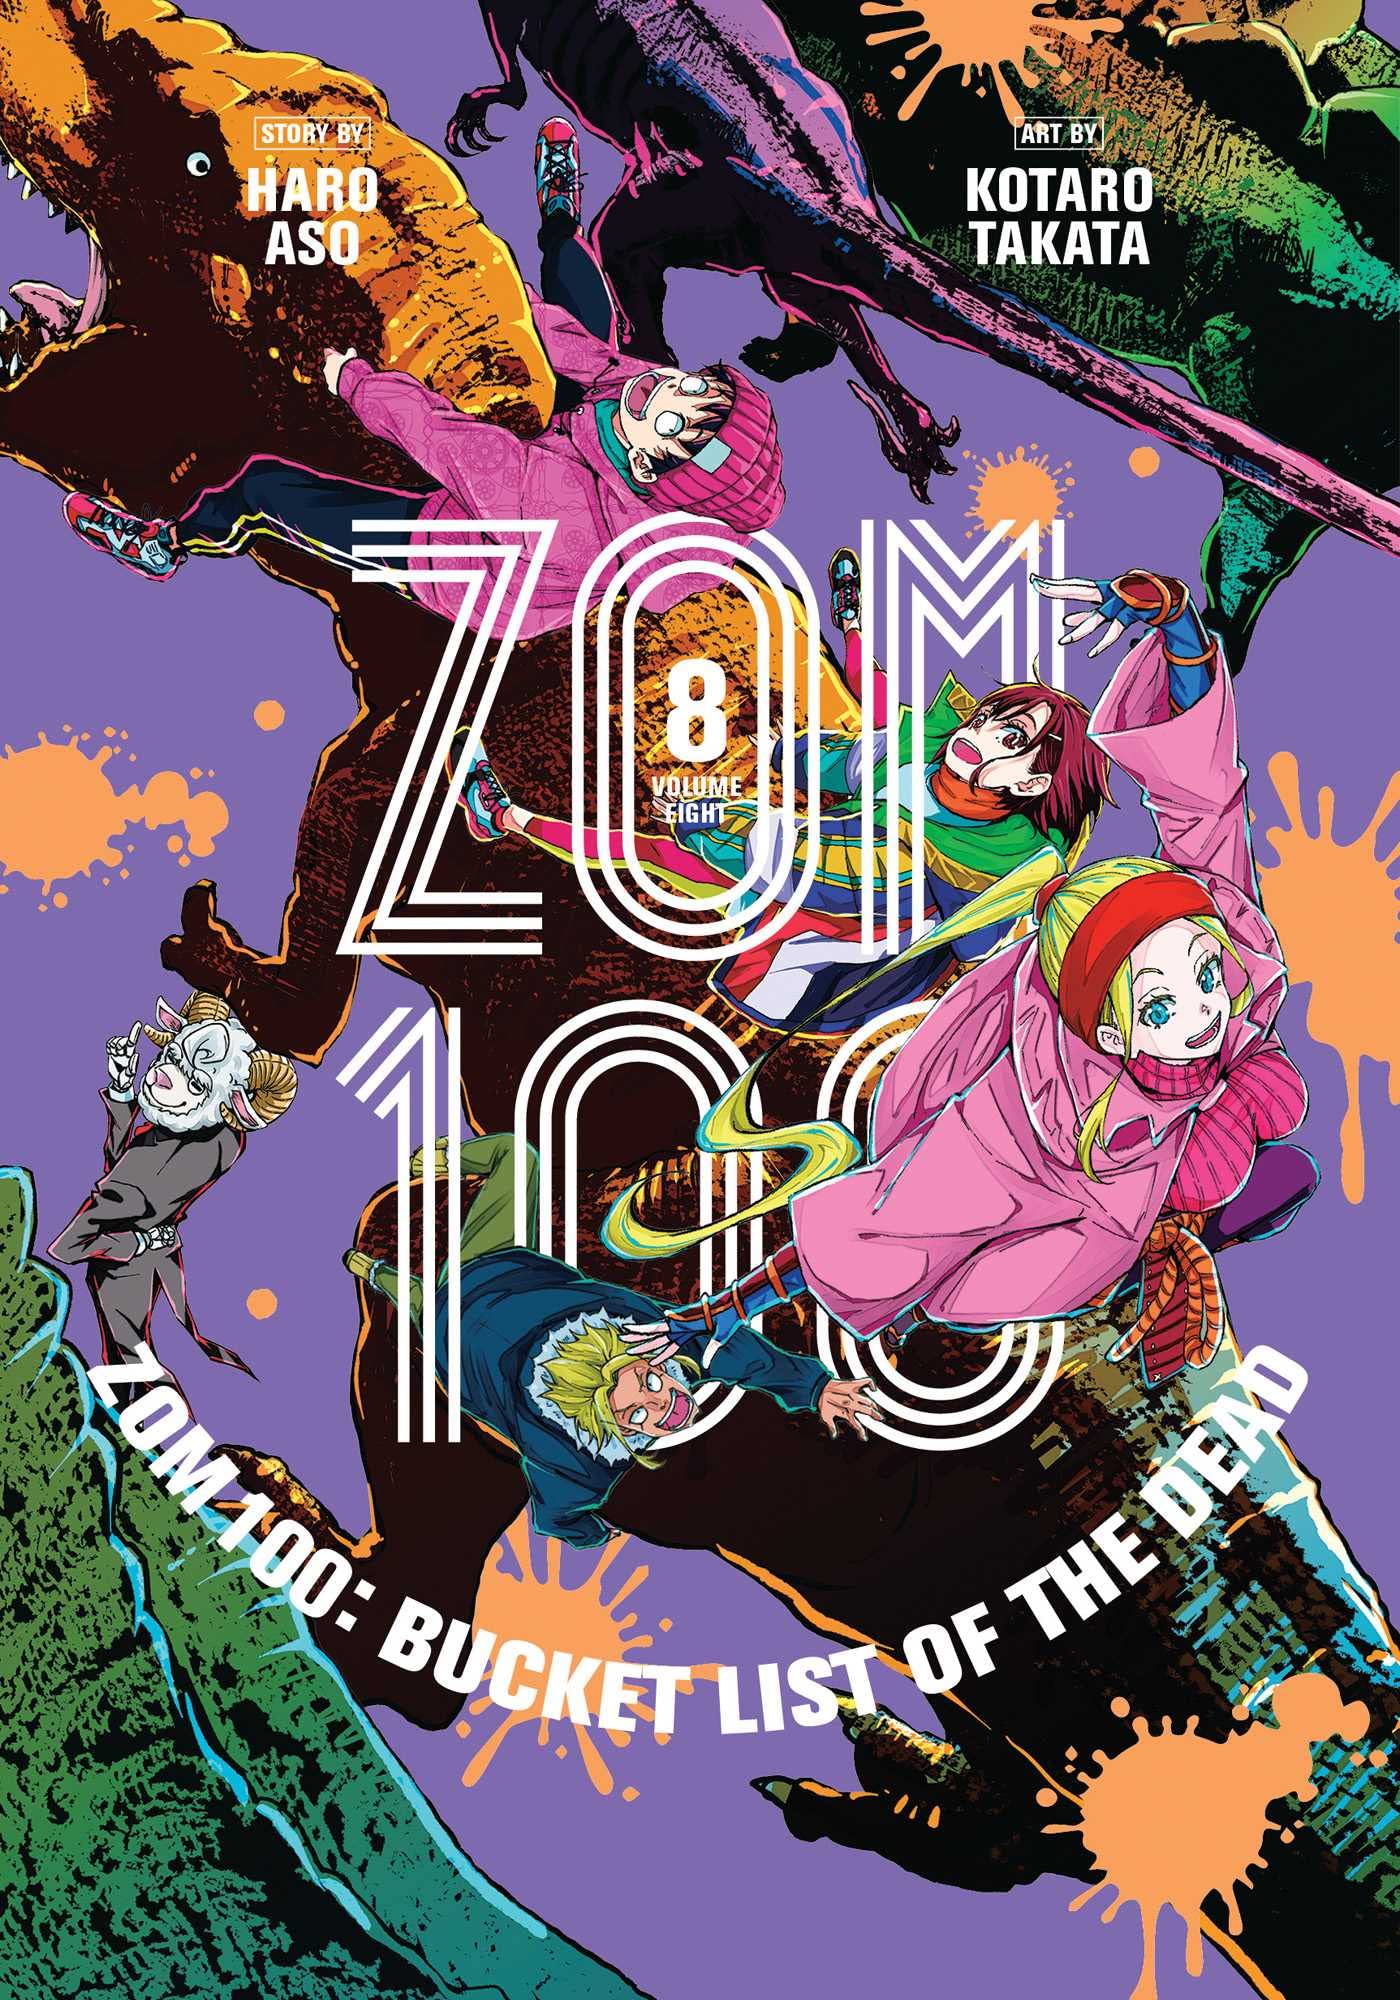 Zom 100 Bucket List of the Dead Manga 100 Bucket List of the Dead Manga Volume 8 (Mature)